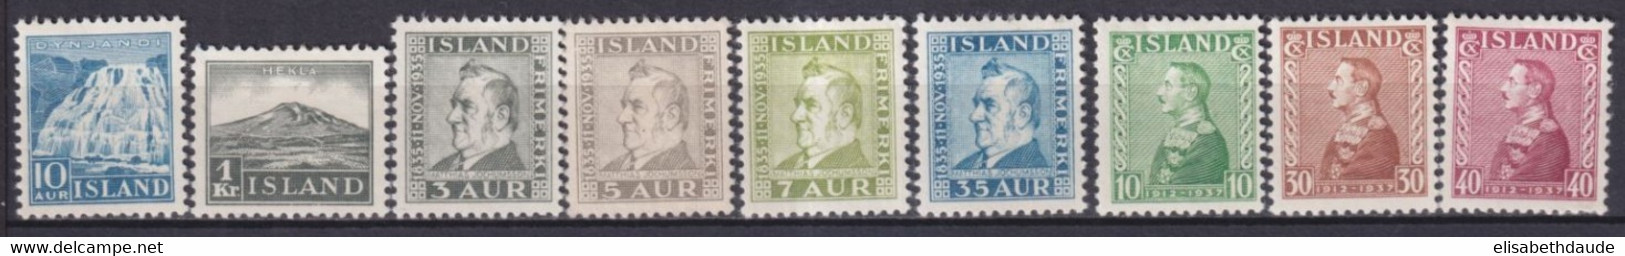 ISLANDE - 1935/1937 - YVERT N° 158/166 * MLH - COTE = 109 EUR. - Ungebraucht